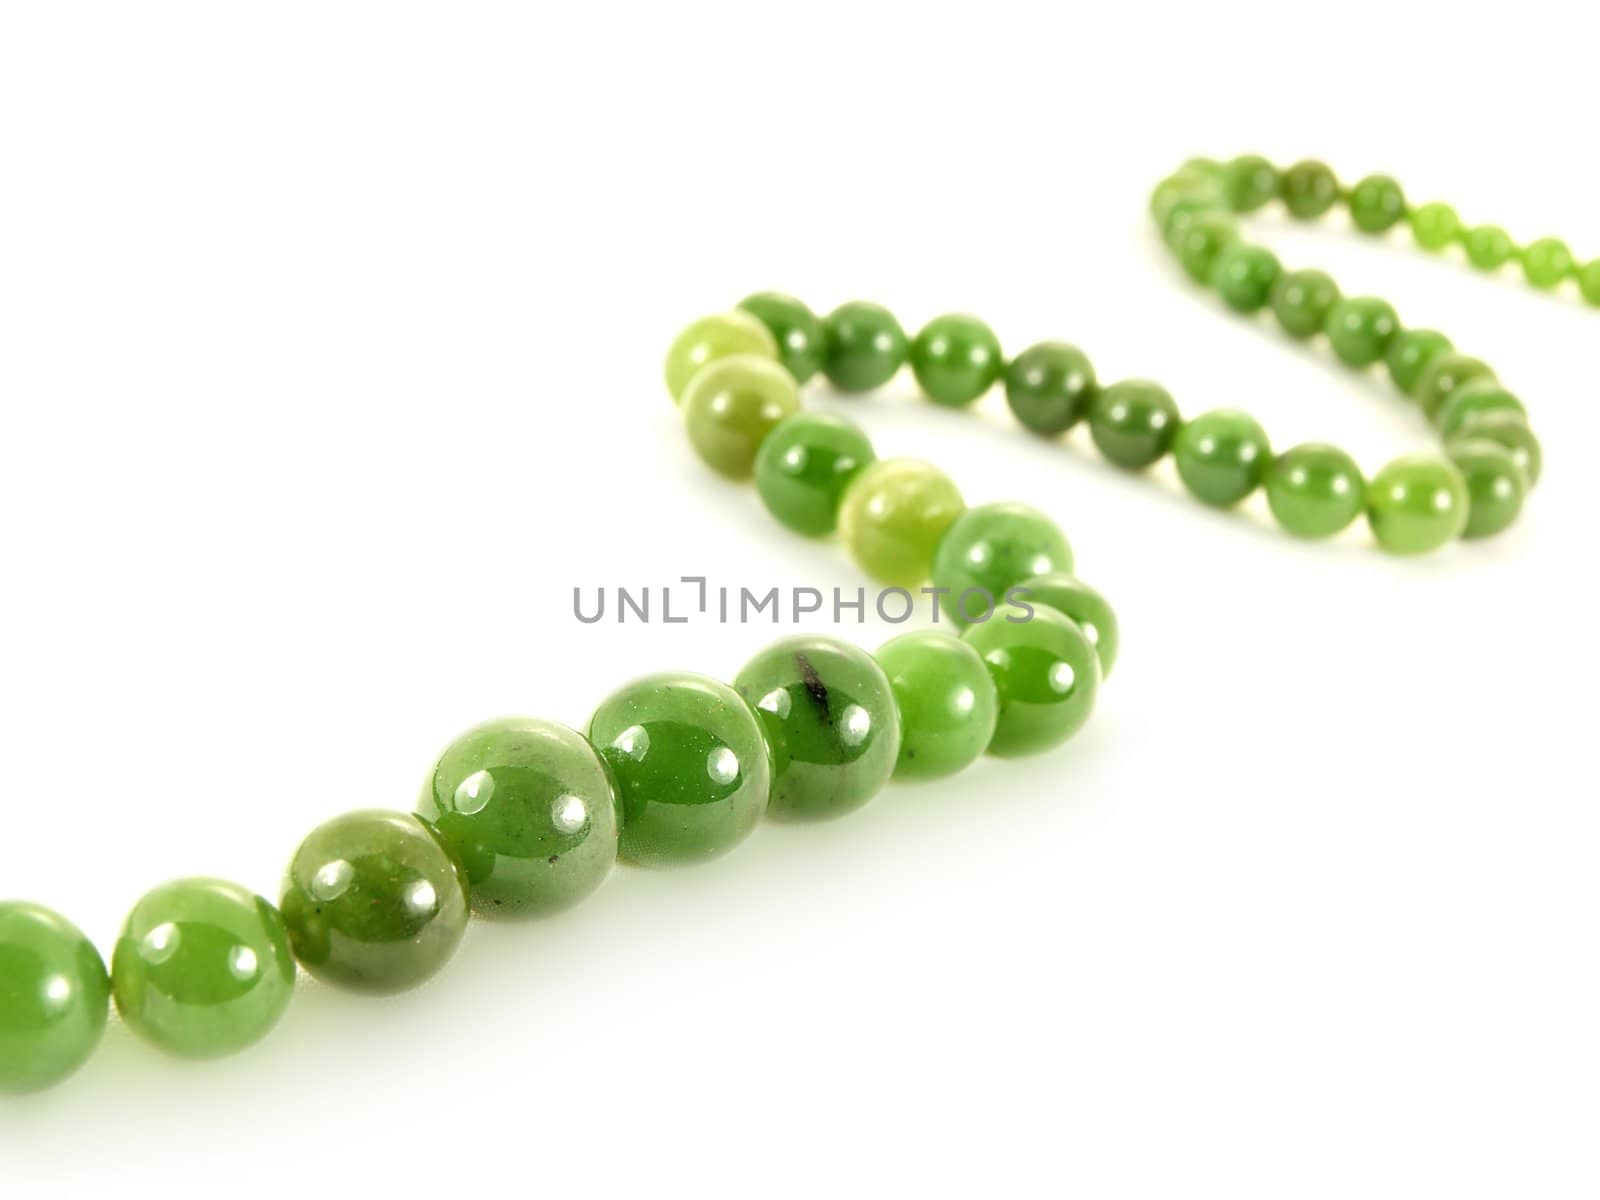 Green gemstone necklace, isolated towards white background